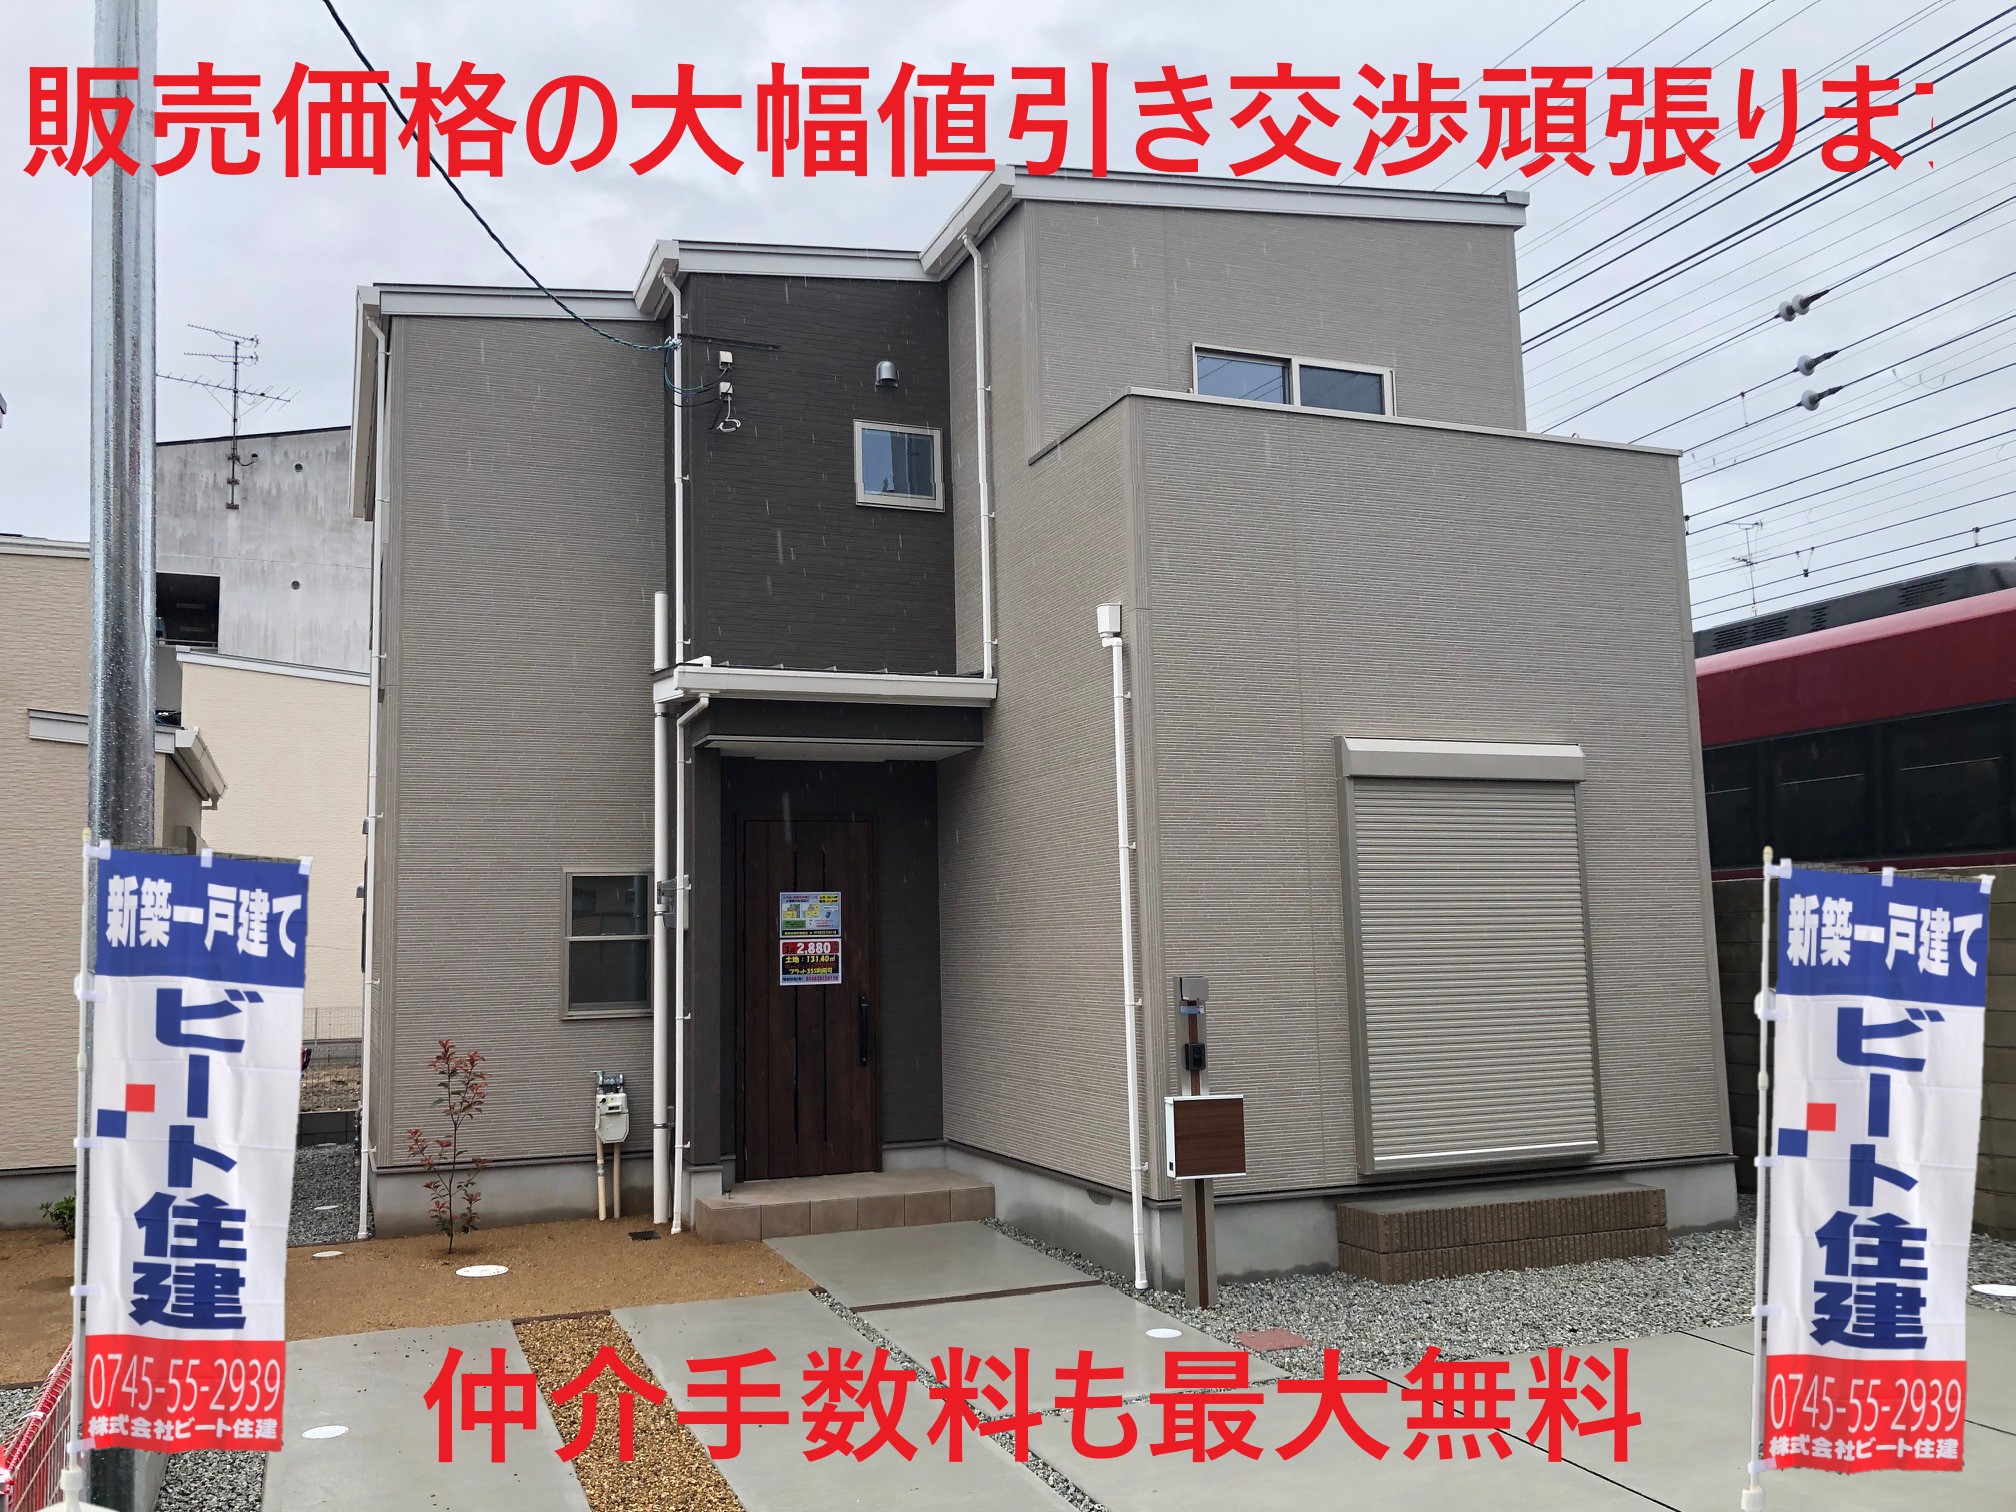 大和高田市   ビート住建   住宅ローン事務費用も無料です。